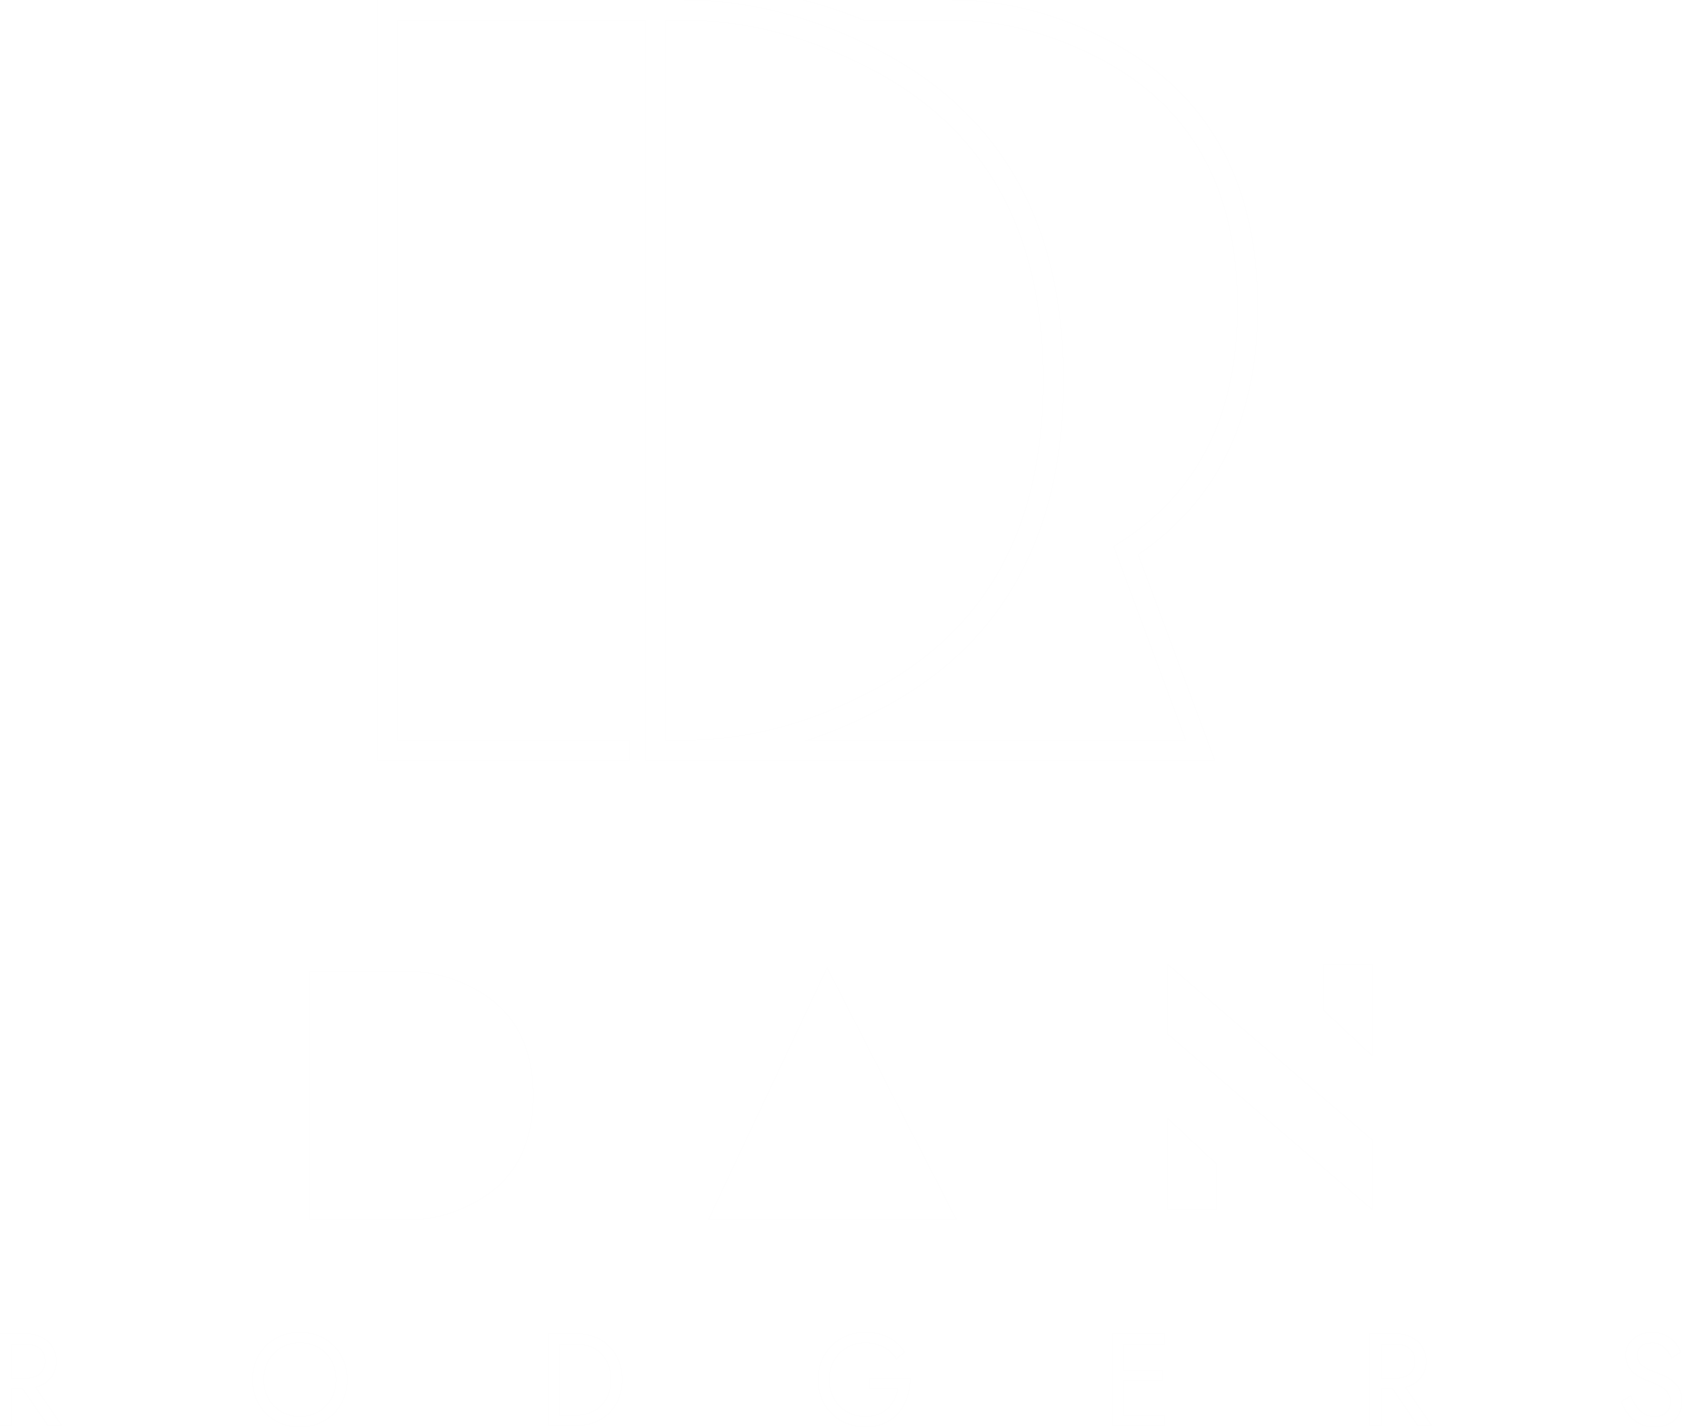 Dan Rodgers